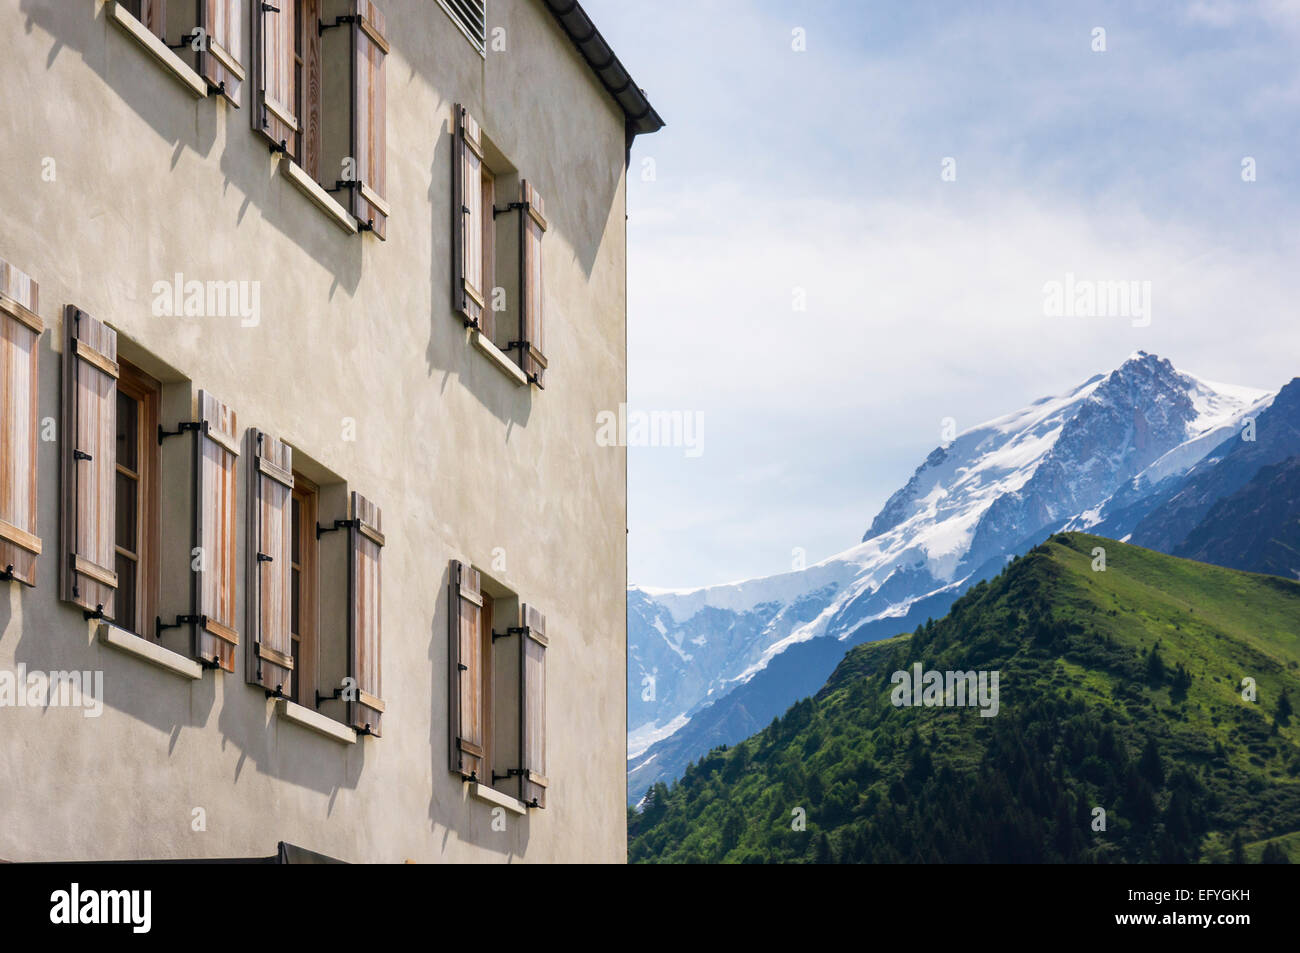 Das Hotel Bellevue mit dem Mont Blanc hinter, über dem Tal von Chamonix, Französische Alpen, Frankreich Stockfoto